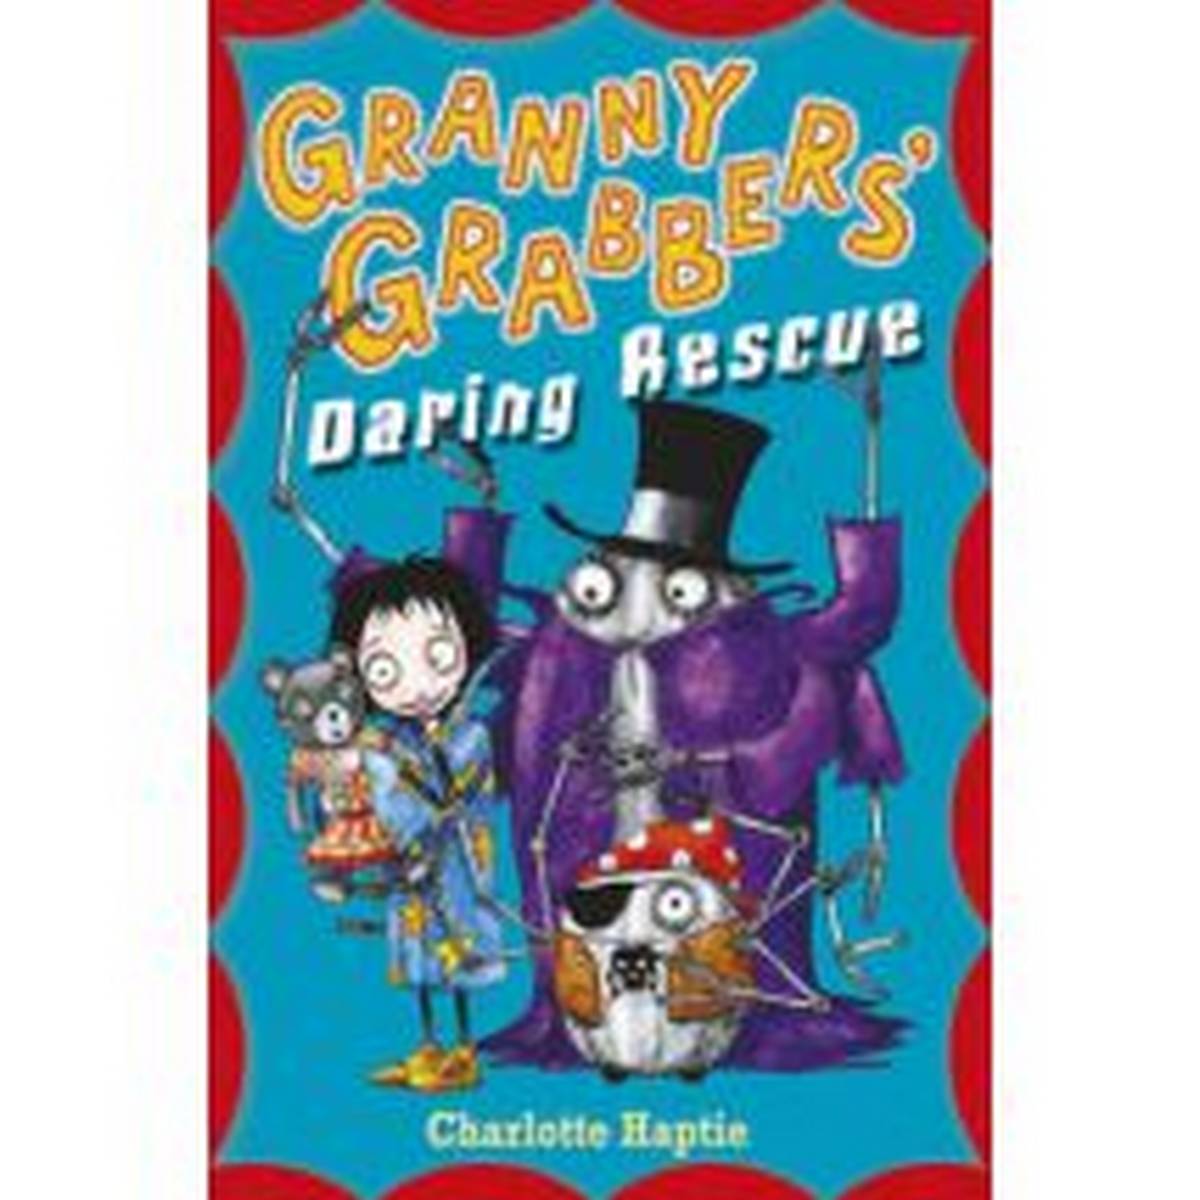 Granny Grabbers Daring Rescue